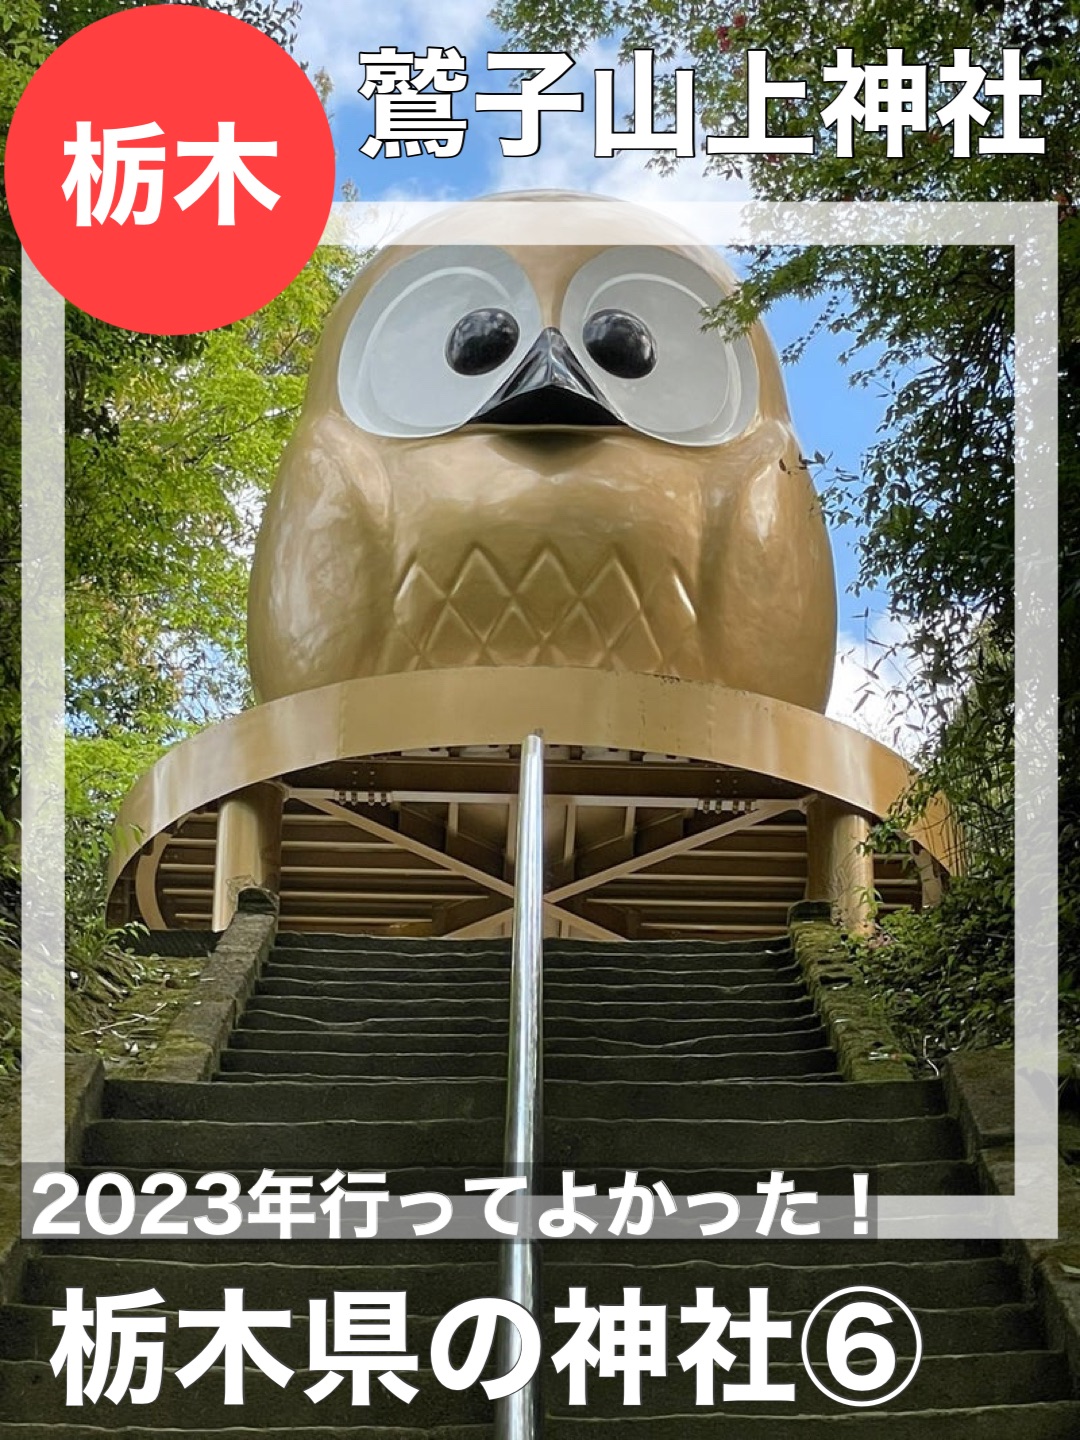 [木县/和子山神社]我很高兴我去了2023年!木县神社⑥